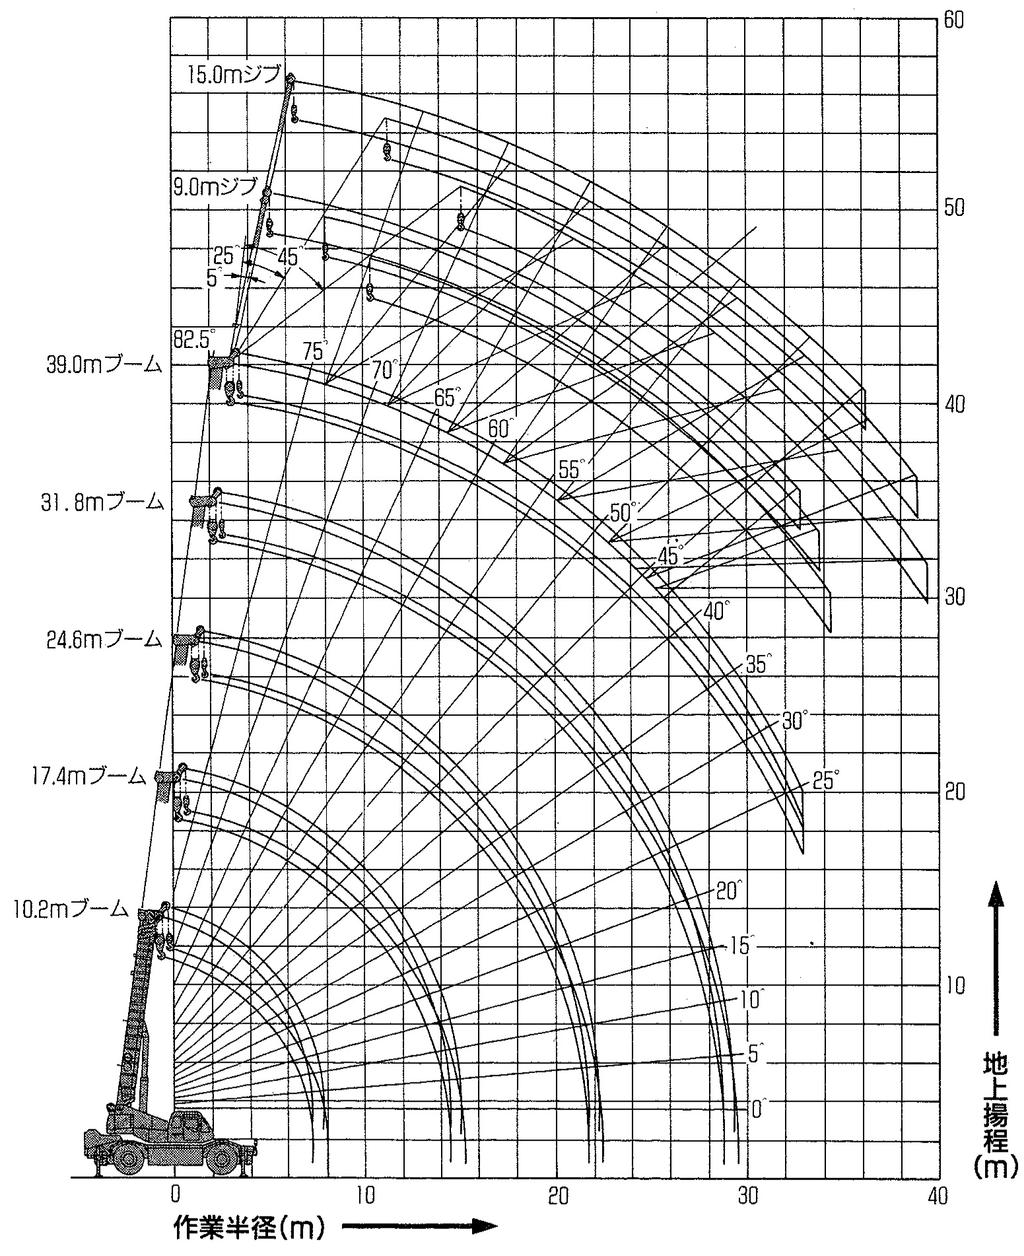 ラフター クレーン 45Ton 吊作業範囲図及び注意事項 KOBELCO RK-450-2 作業範囲図 ( 注 ) 1. 上図は ブームのたわみを含んでおりません 2.